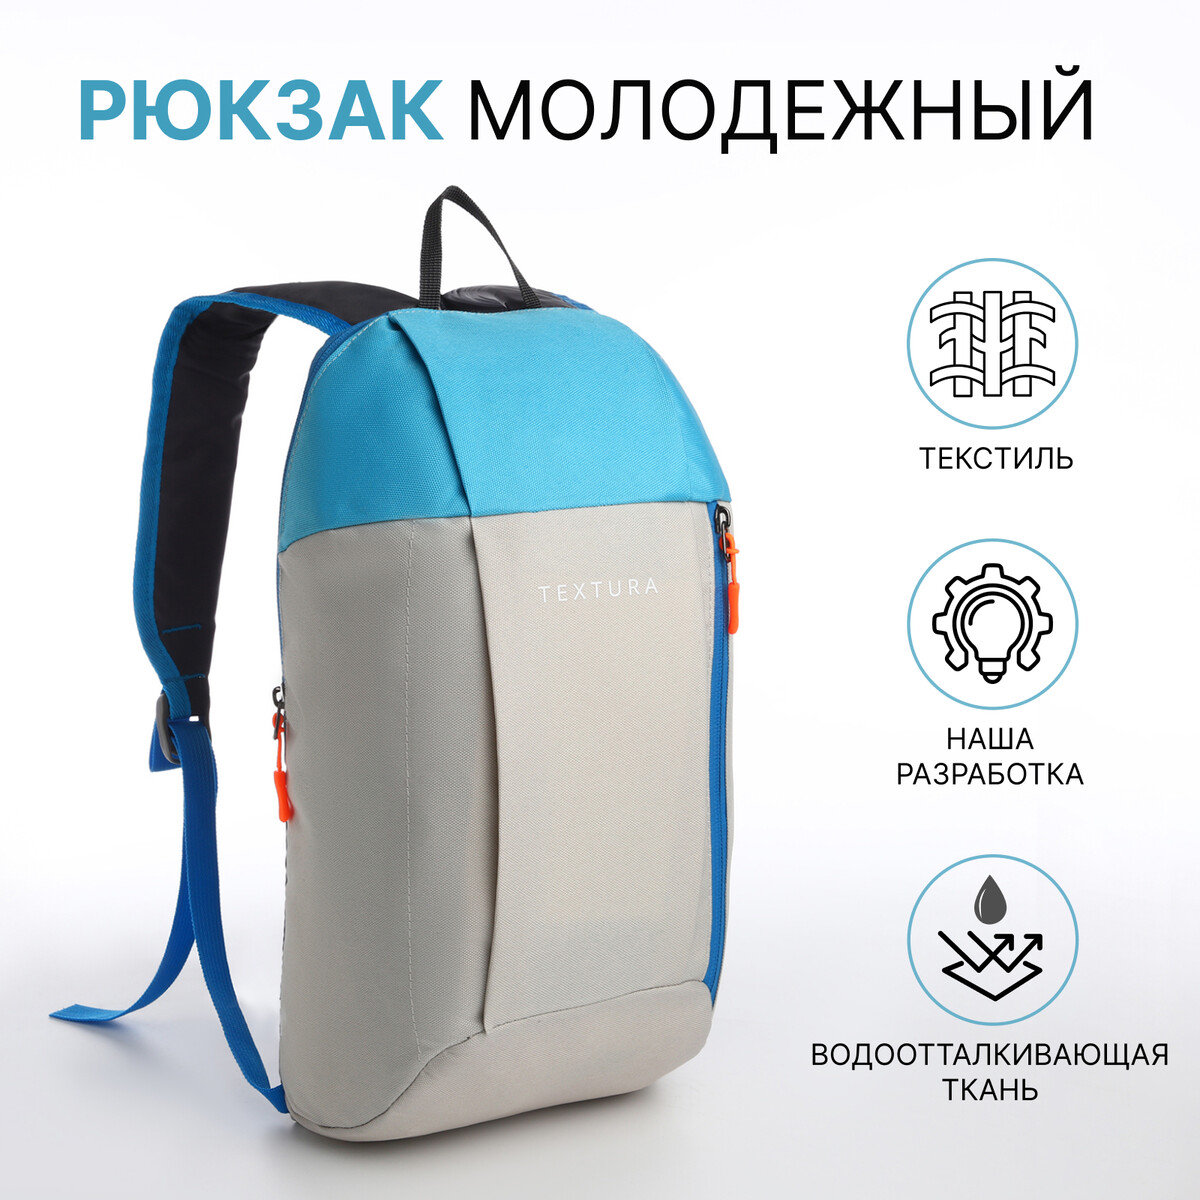 Рюкзак спортивный на молнии, textura, наружный карман, цвет бежевый/голубой